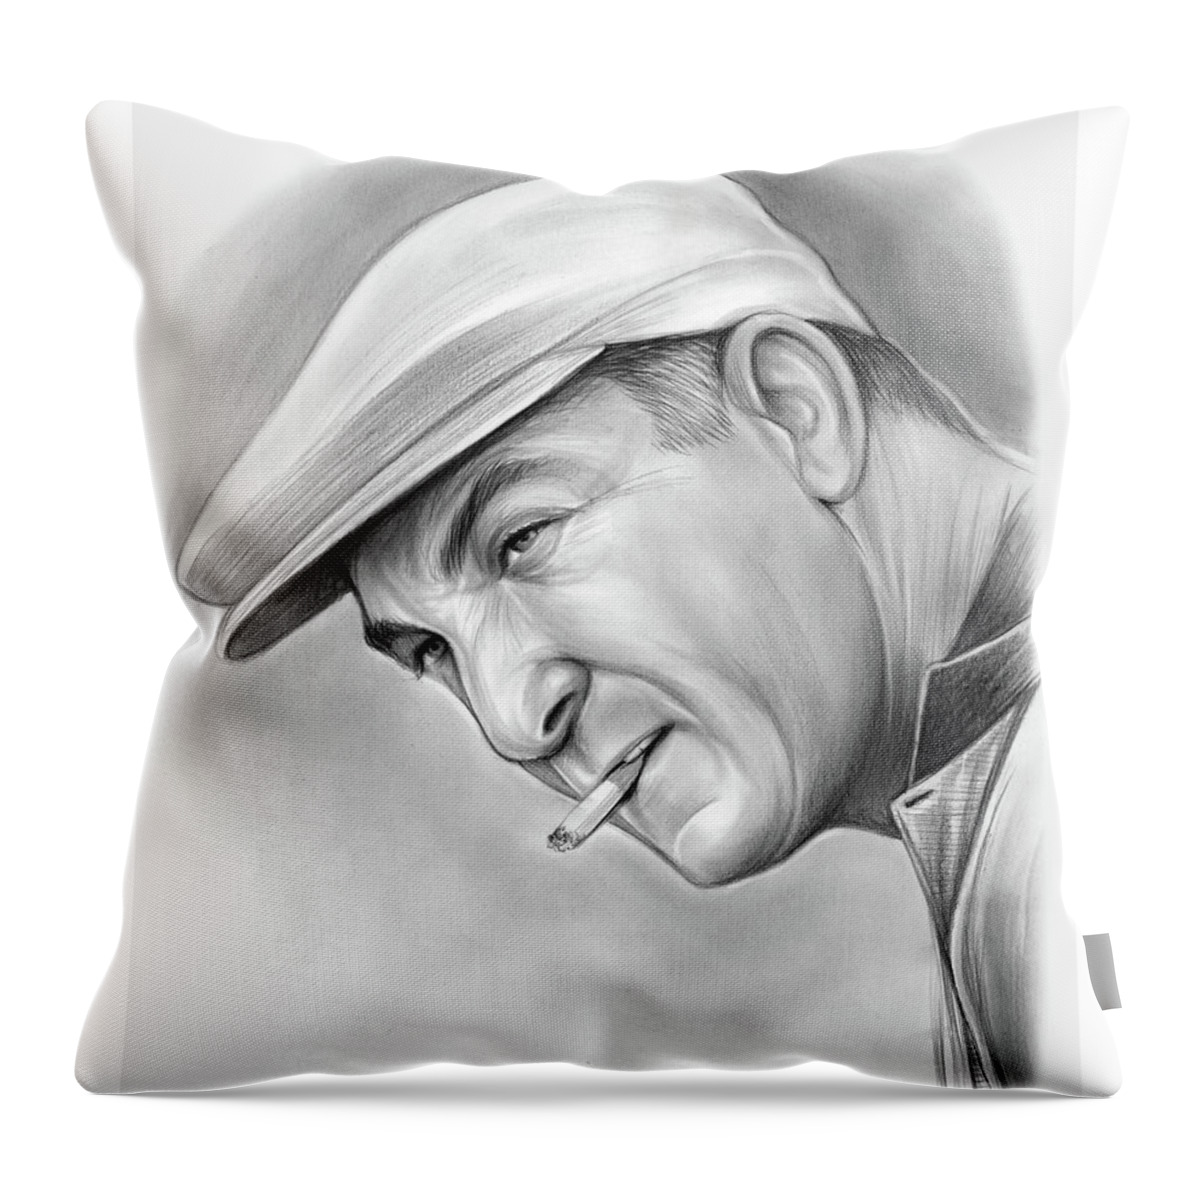 Ben Hogan Throw Pillow featuring the drawing Ben Hogan by Greg Joens